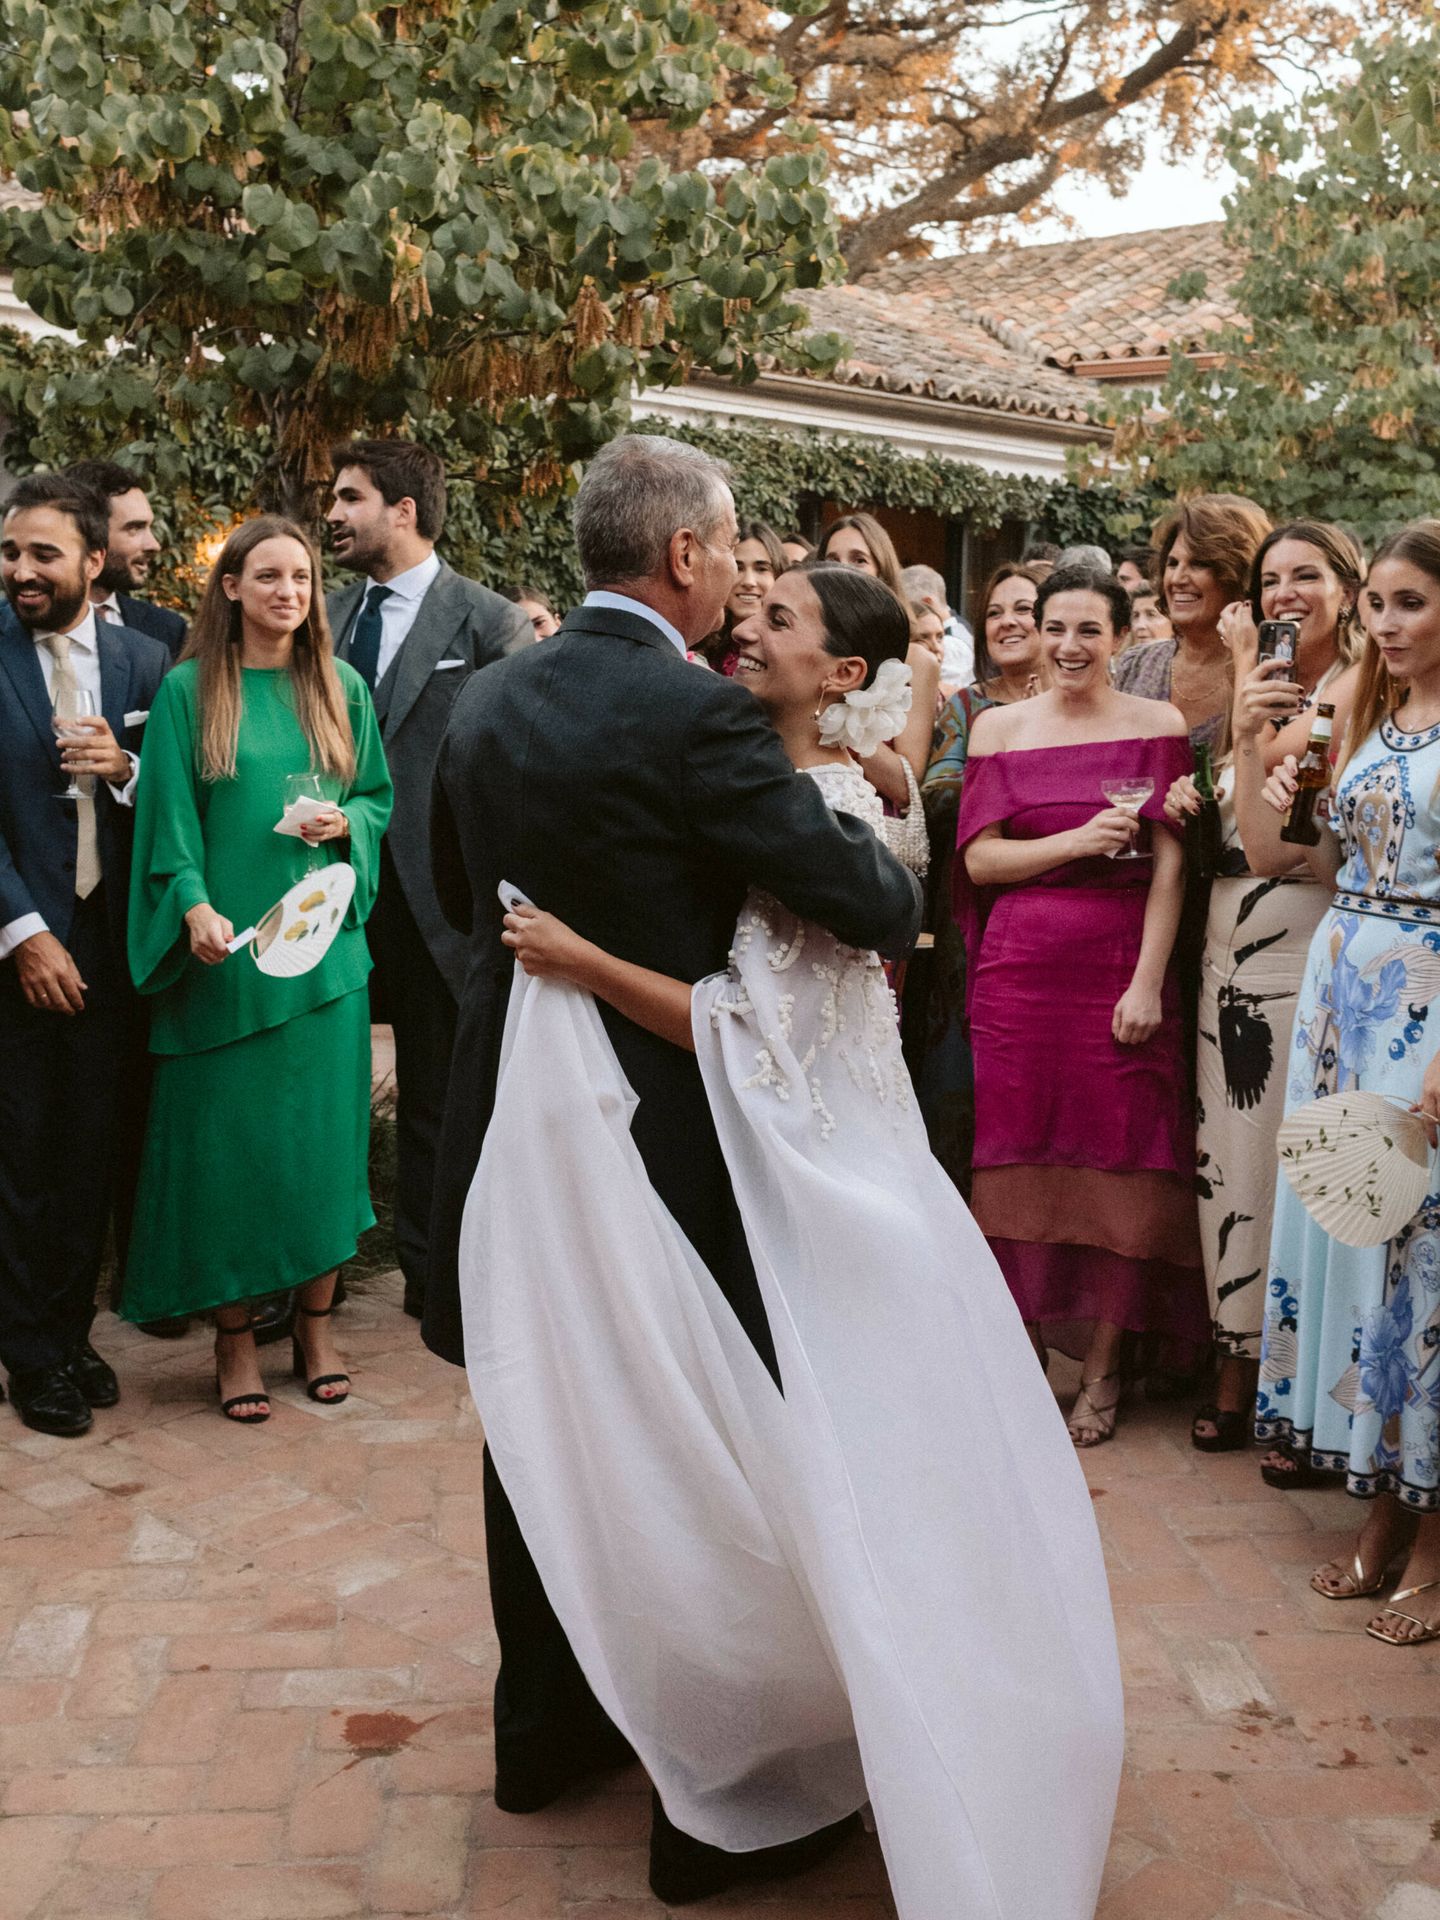 La boda de Andrea en Madrid. (Dos más en la mesa)